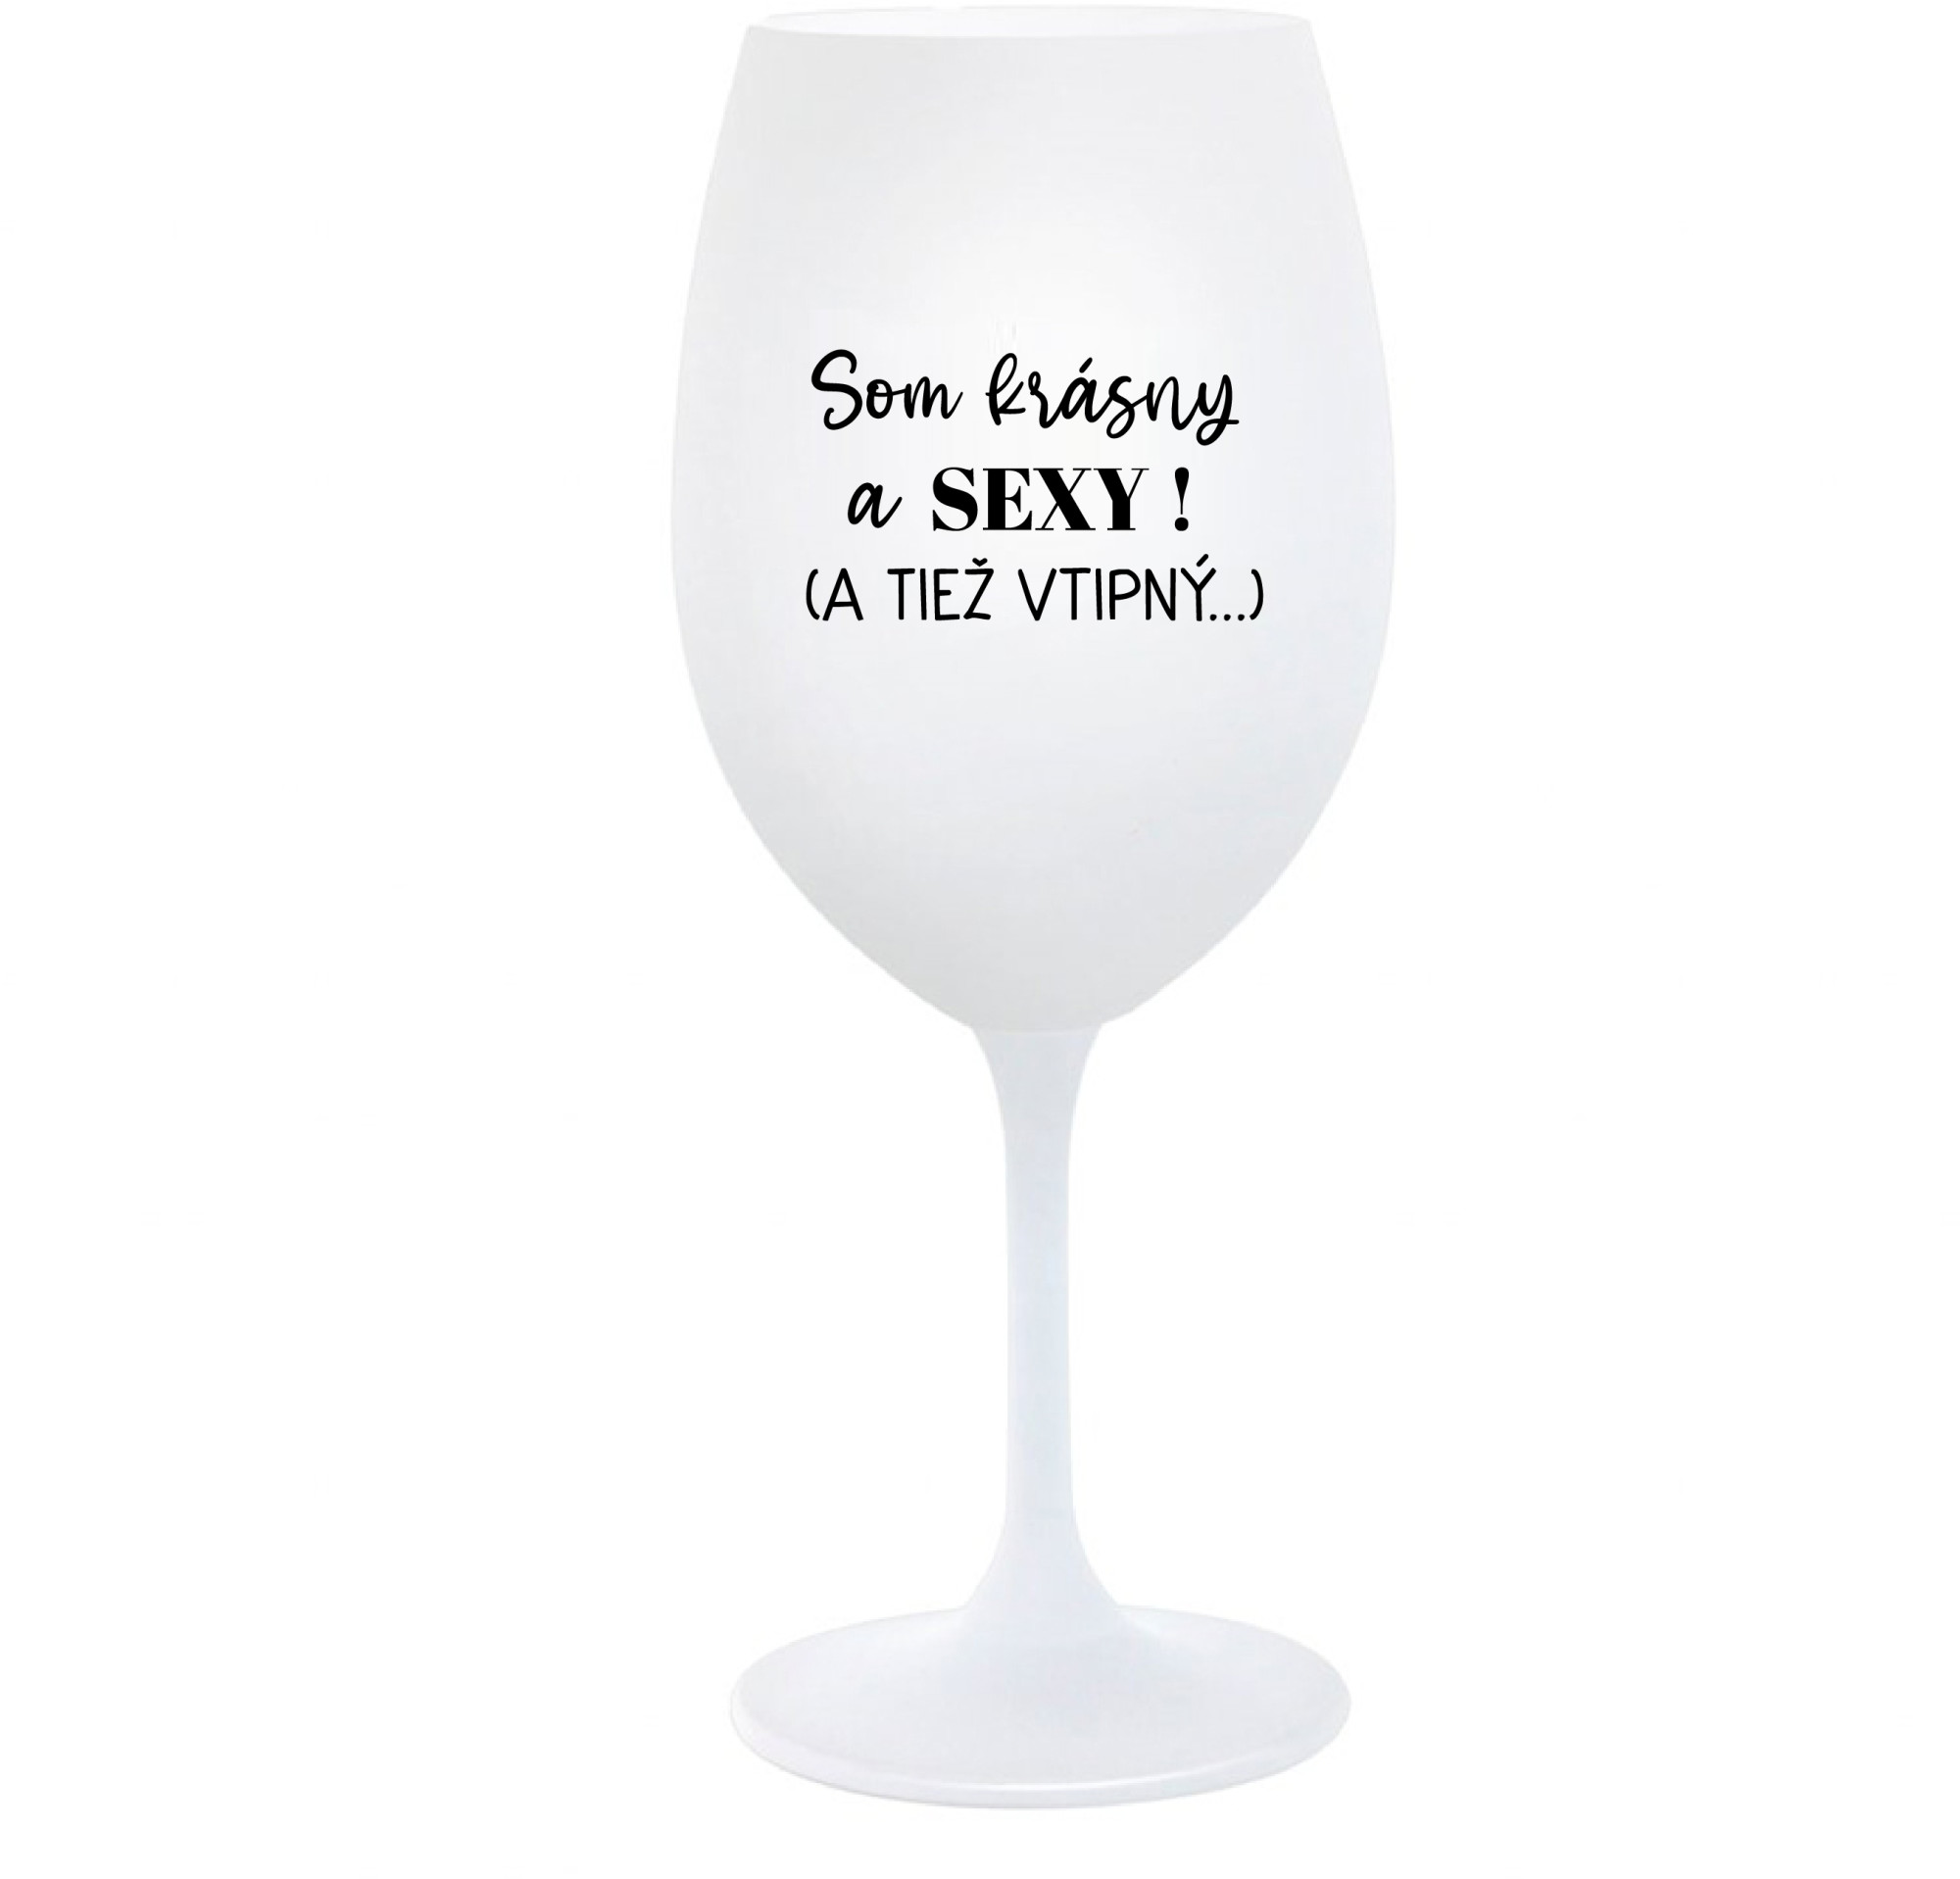 SOM KRÁSNY A SEXY! (A TIEŽ VTIPNÝ...) - bílá sklenice na víno 350 ml